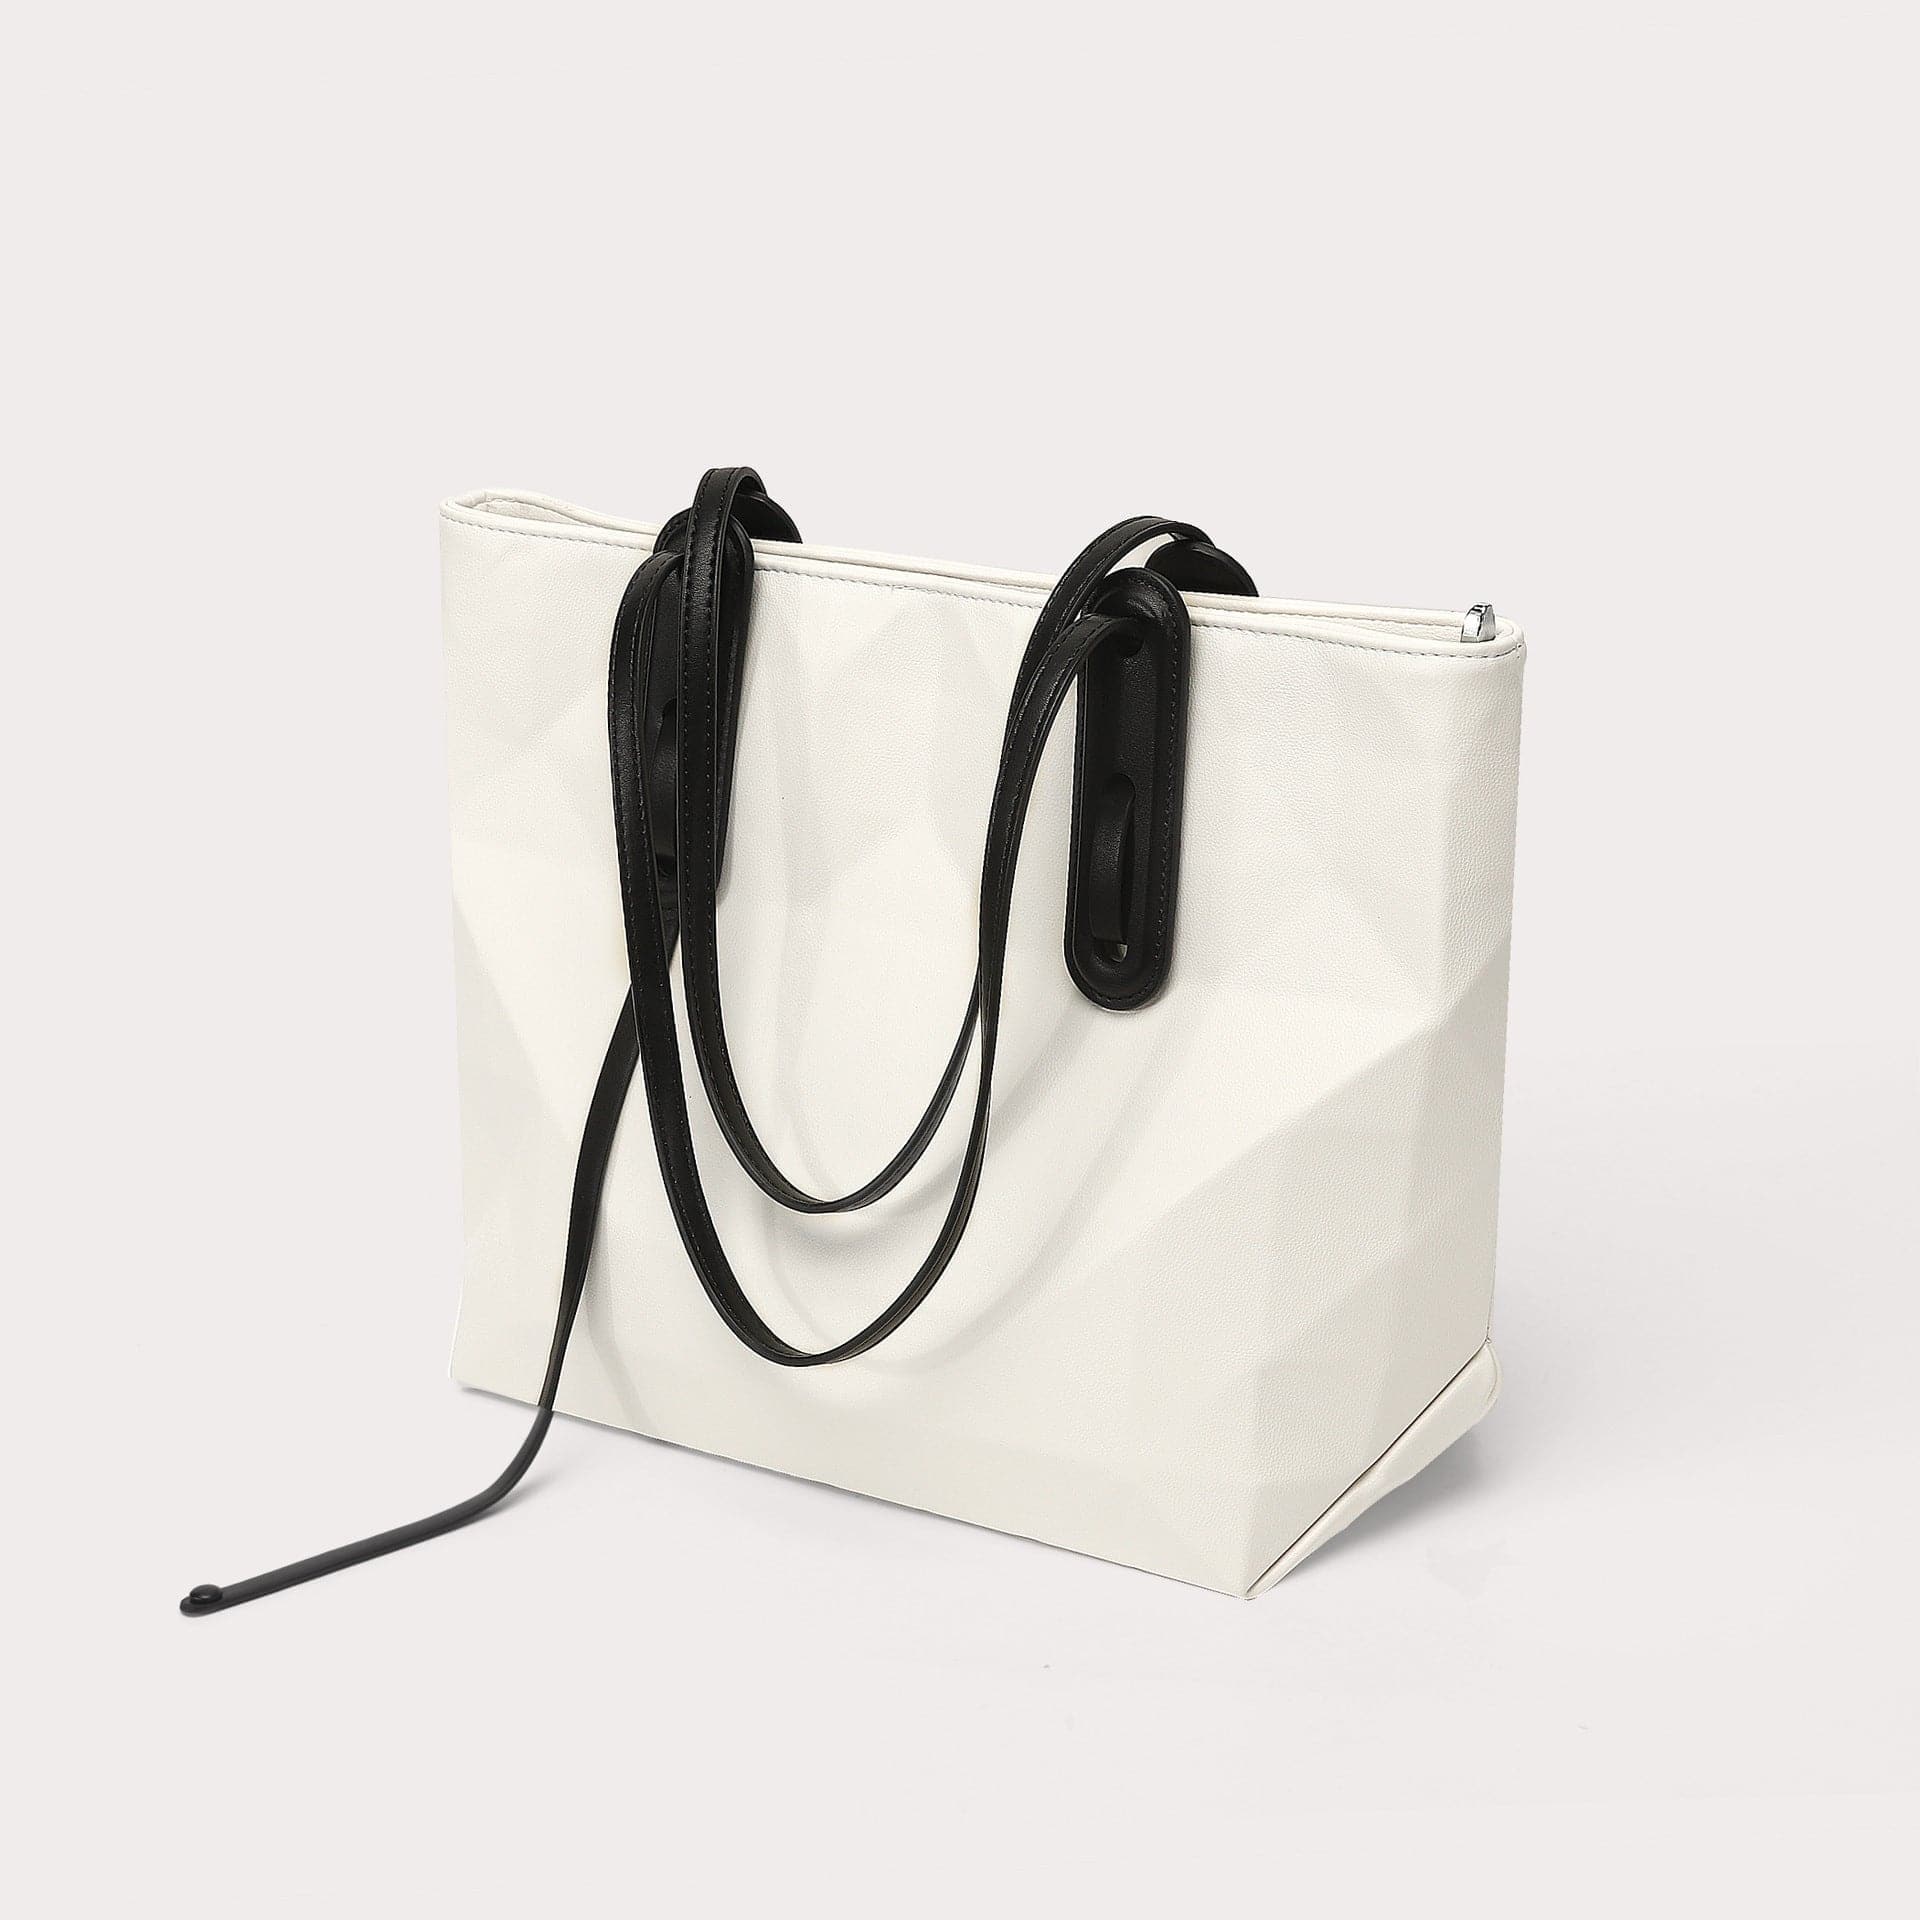 White with black - Simple Design Large Capacity Shoulder Bag - handbag at TFC&H Co.